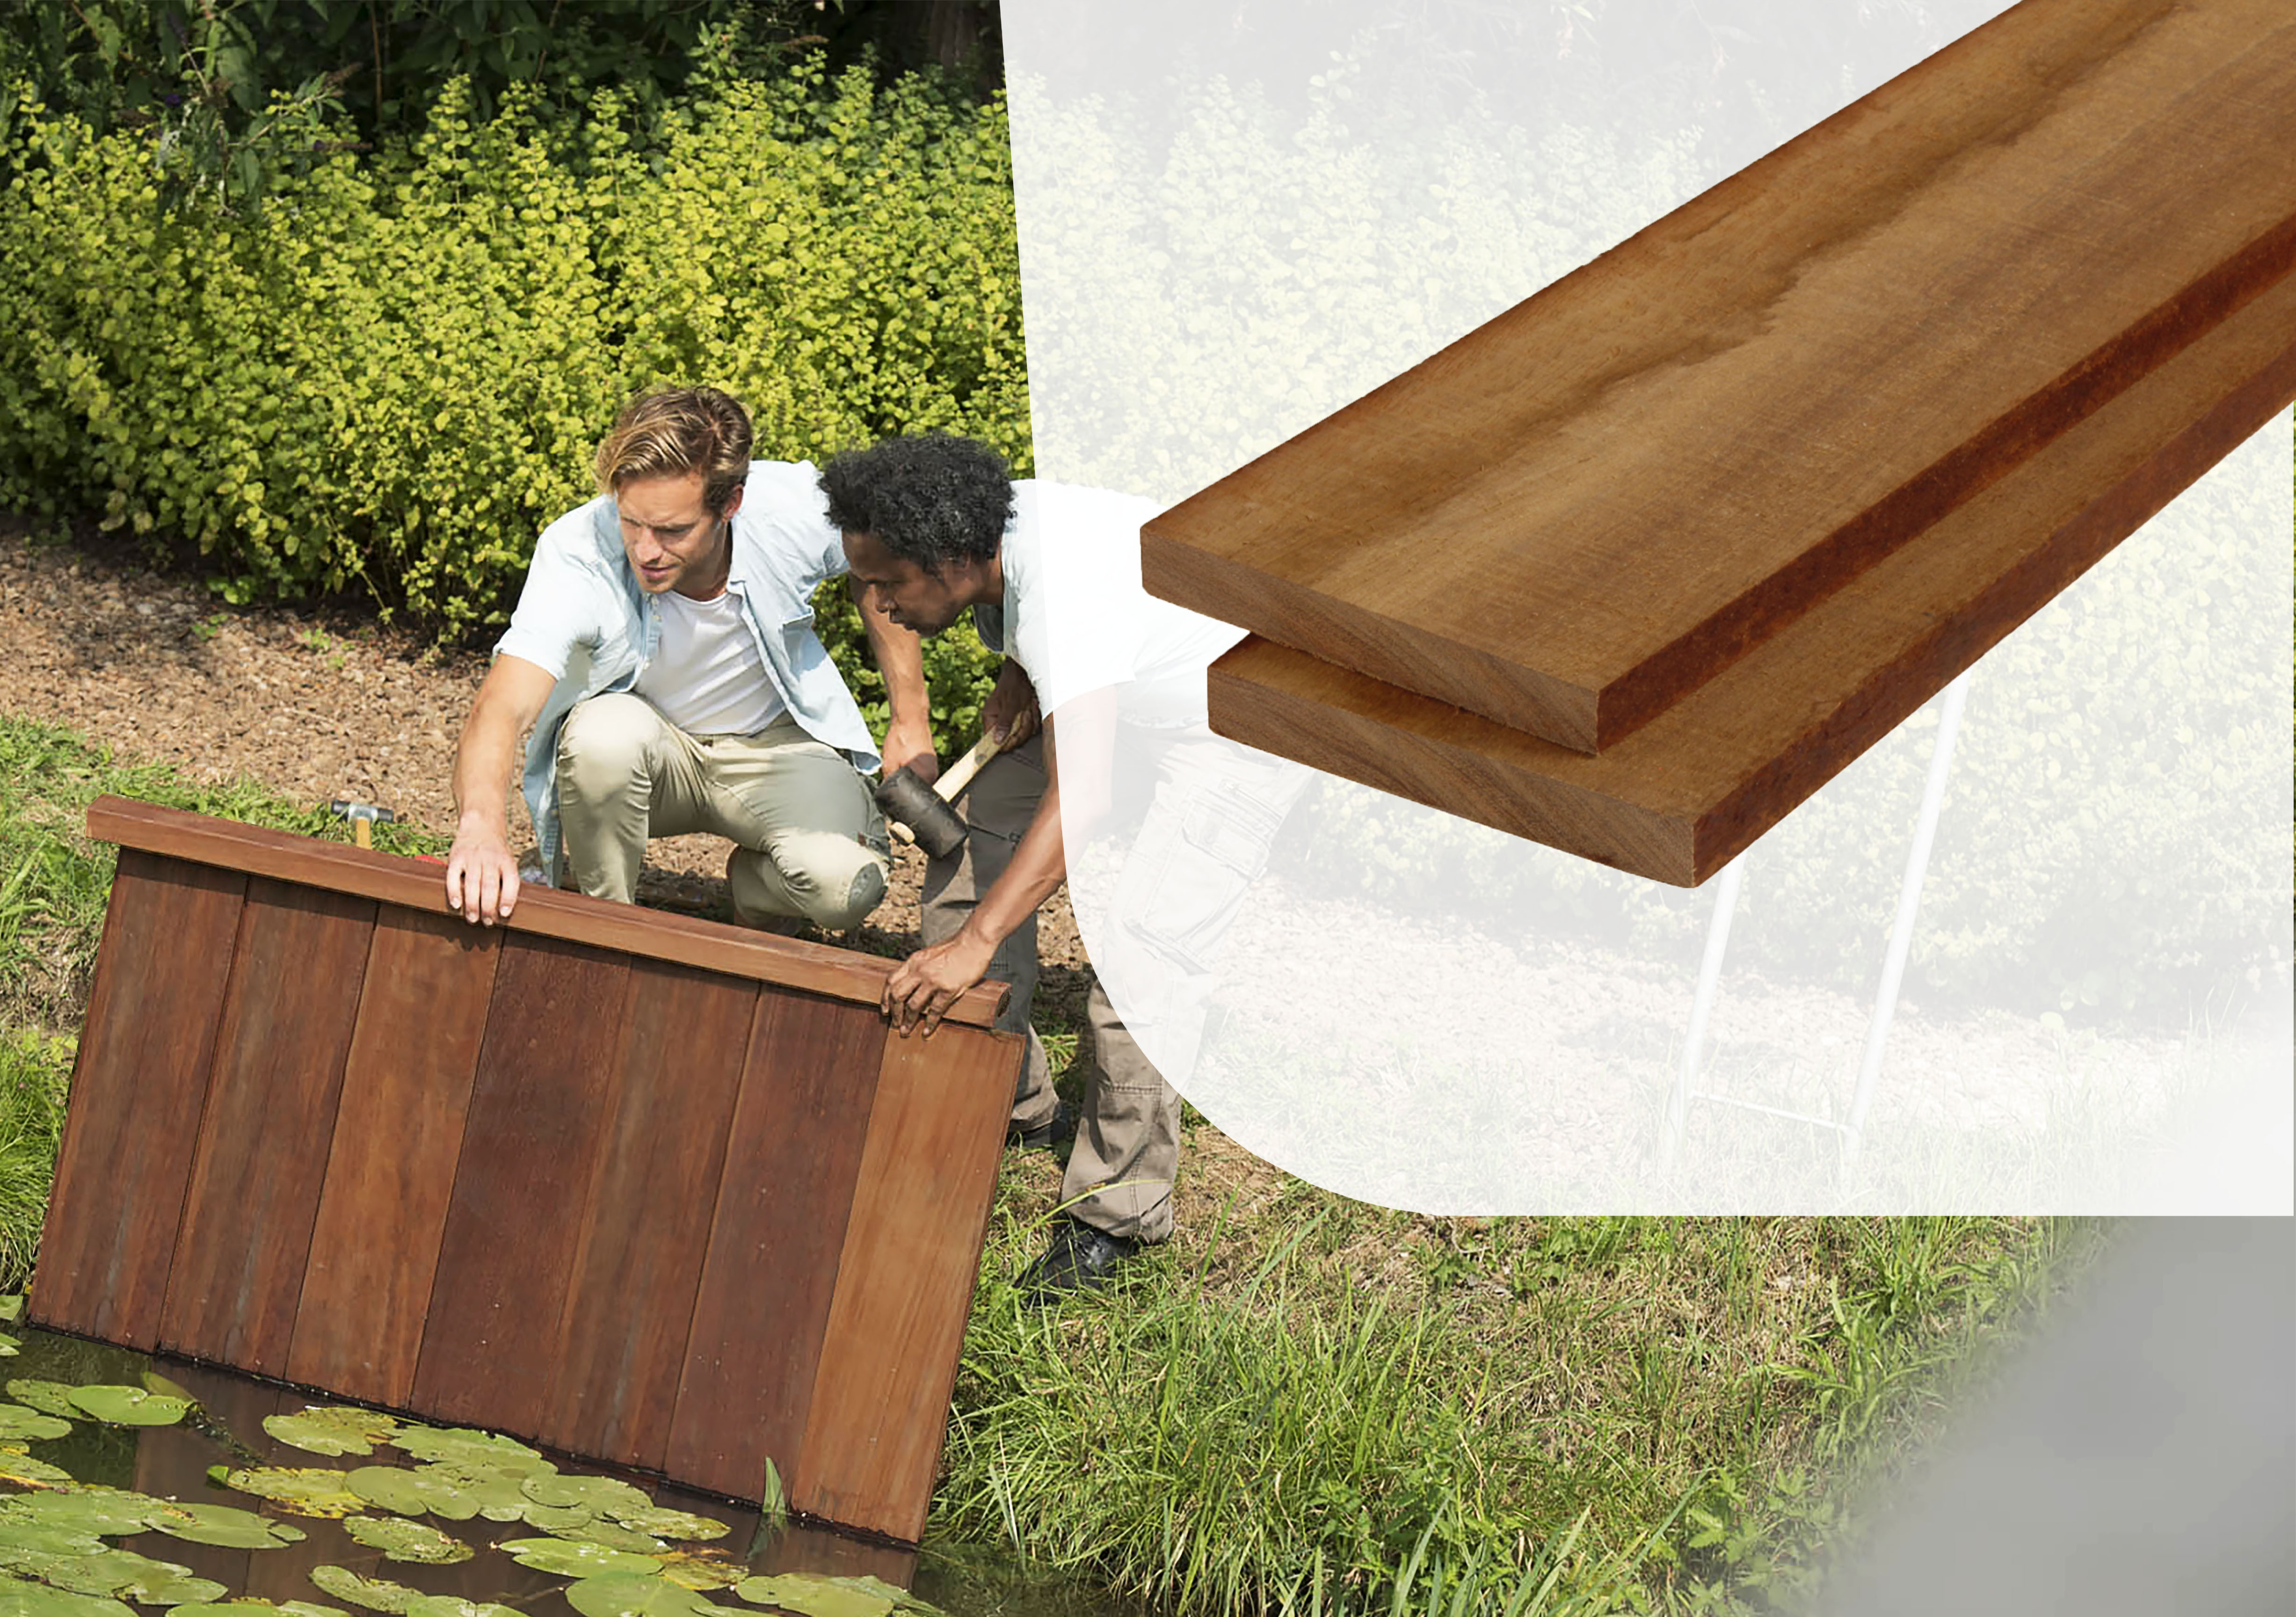 Hardhouten plank | AVE | 20 x 150 mm | 400 cm